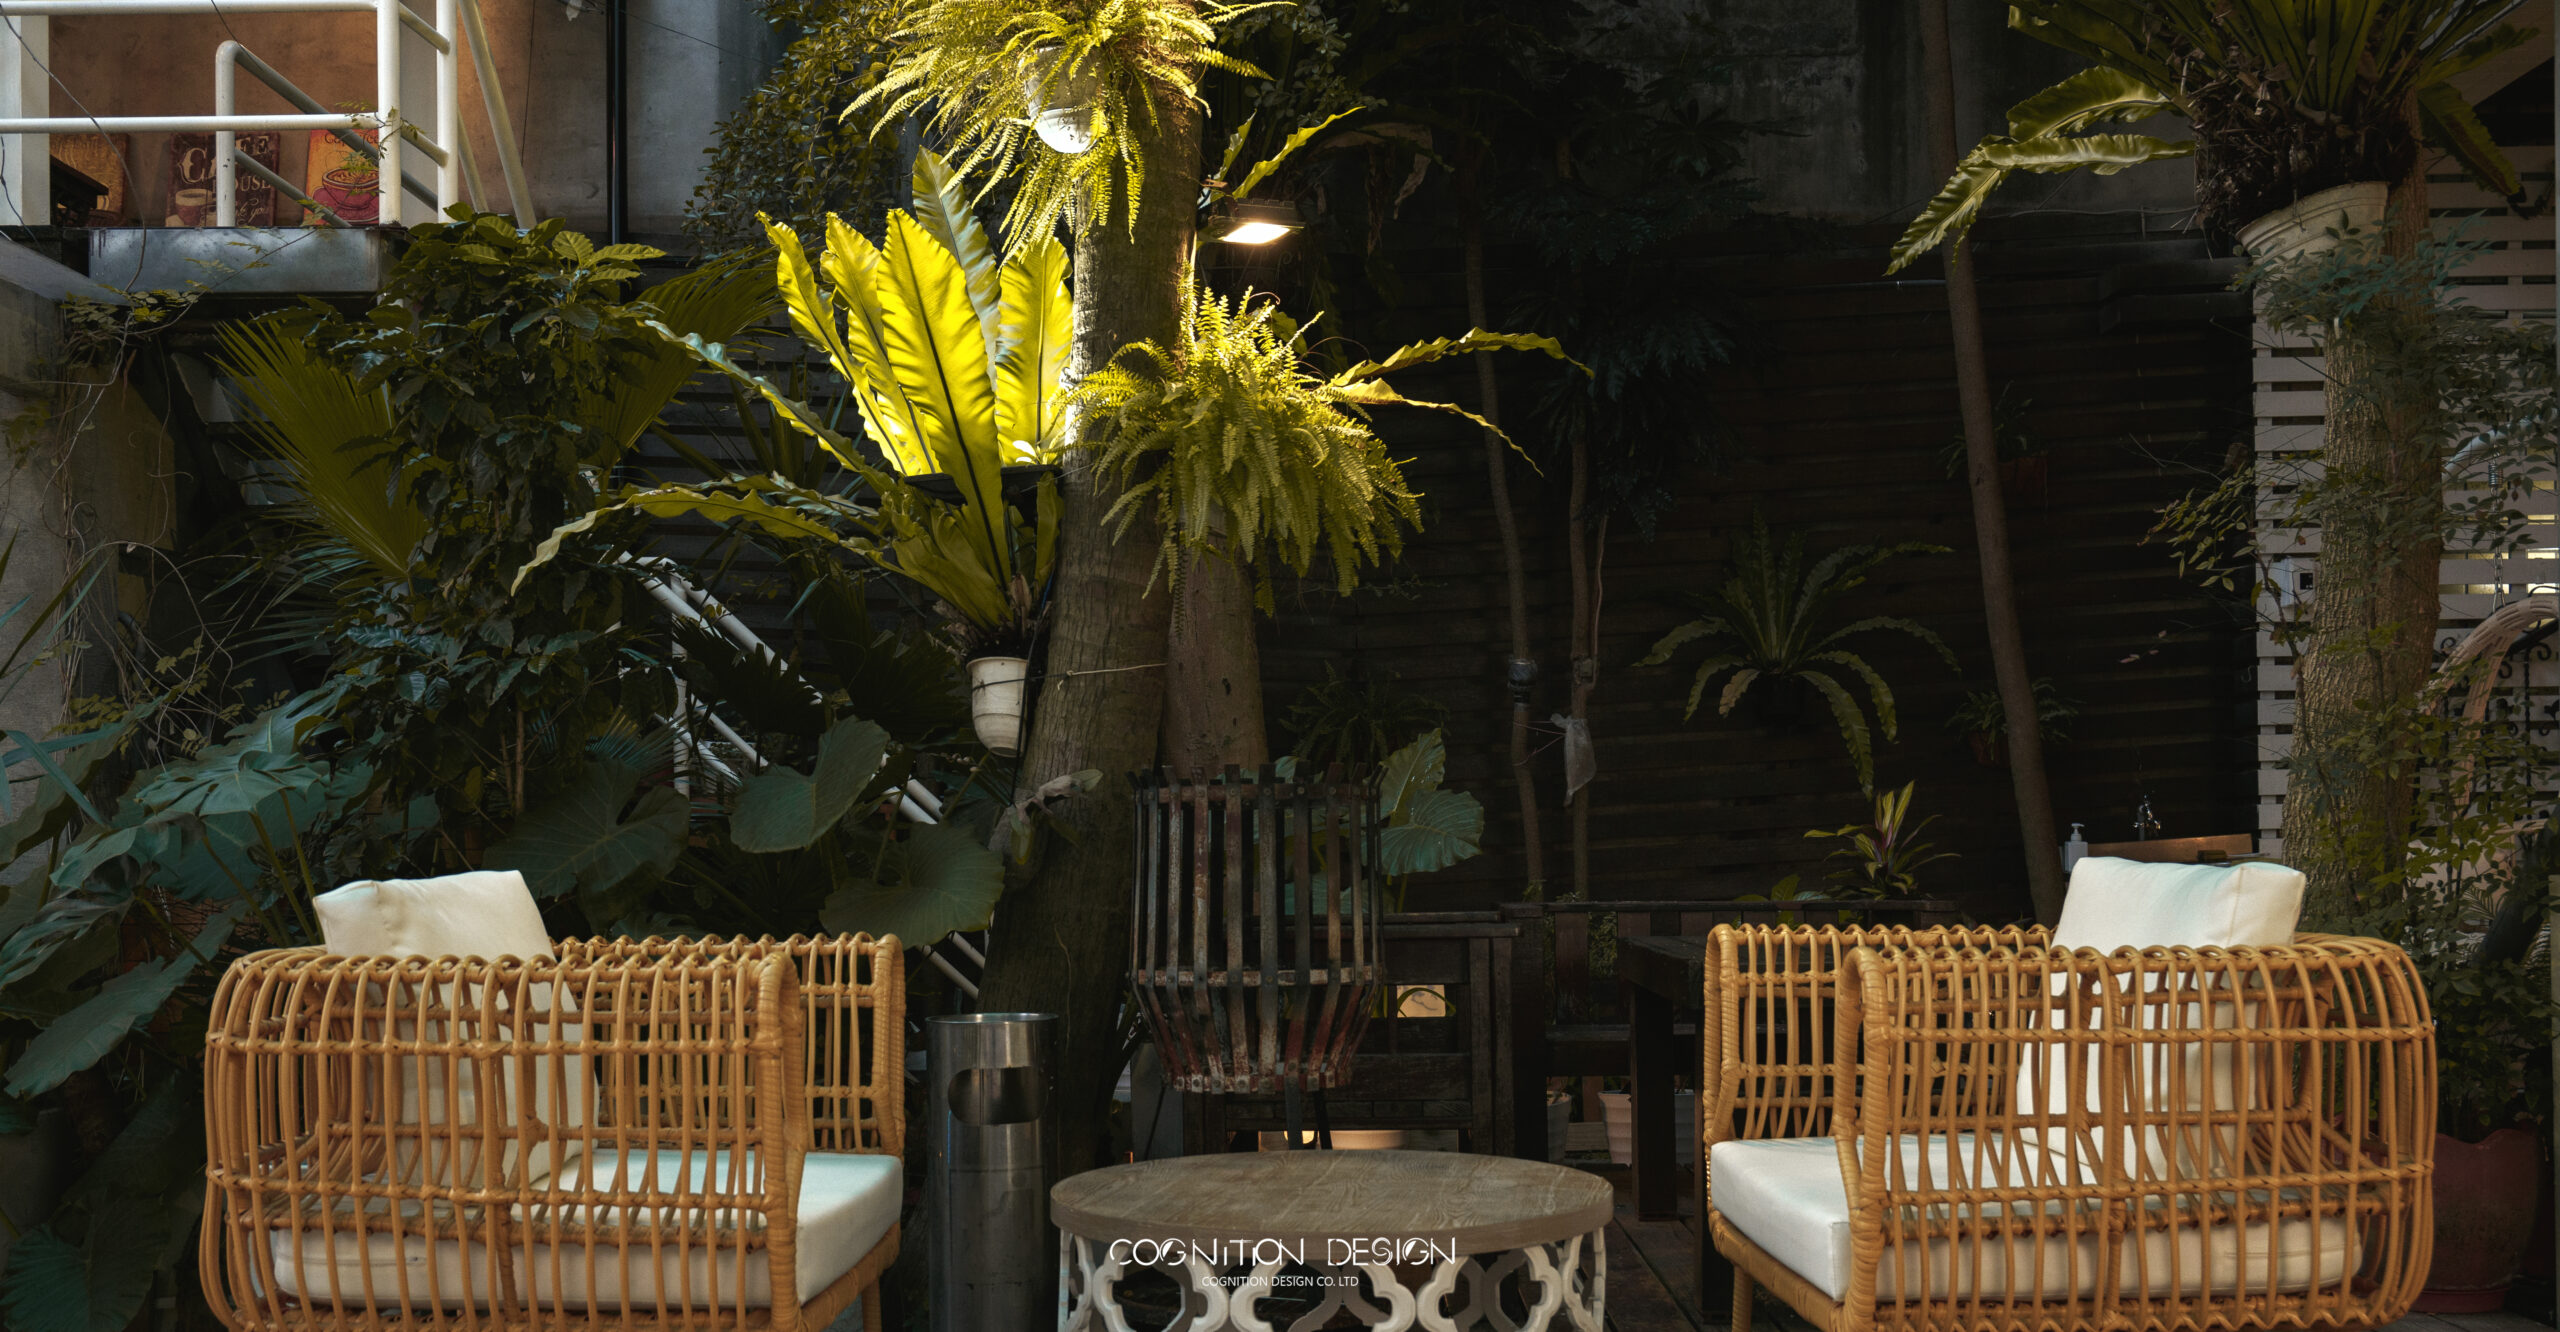 店面酒吧設計植栽可以增添空間氛圍